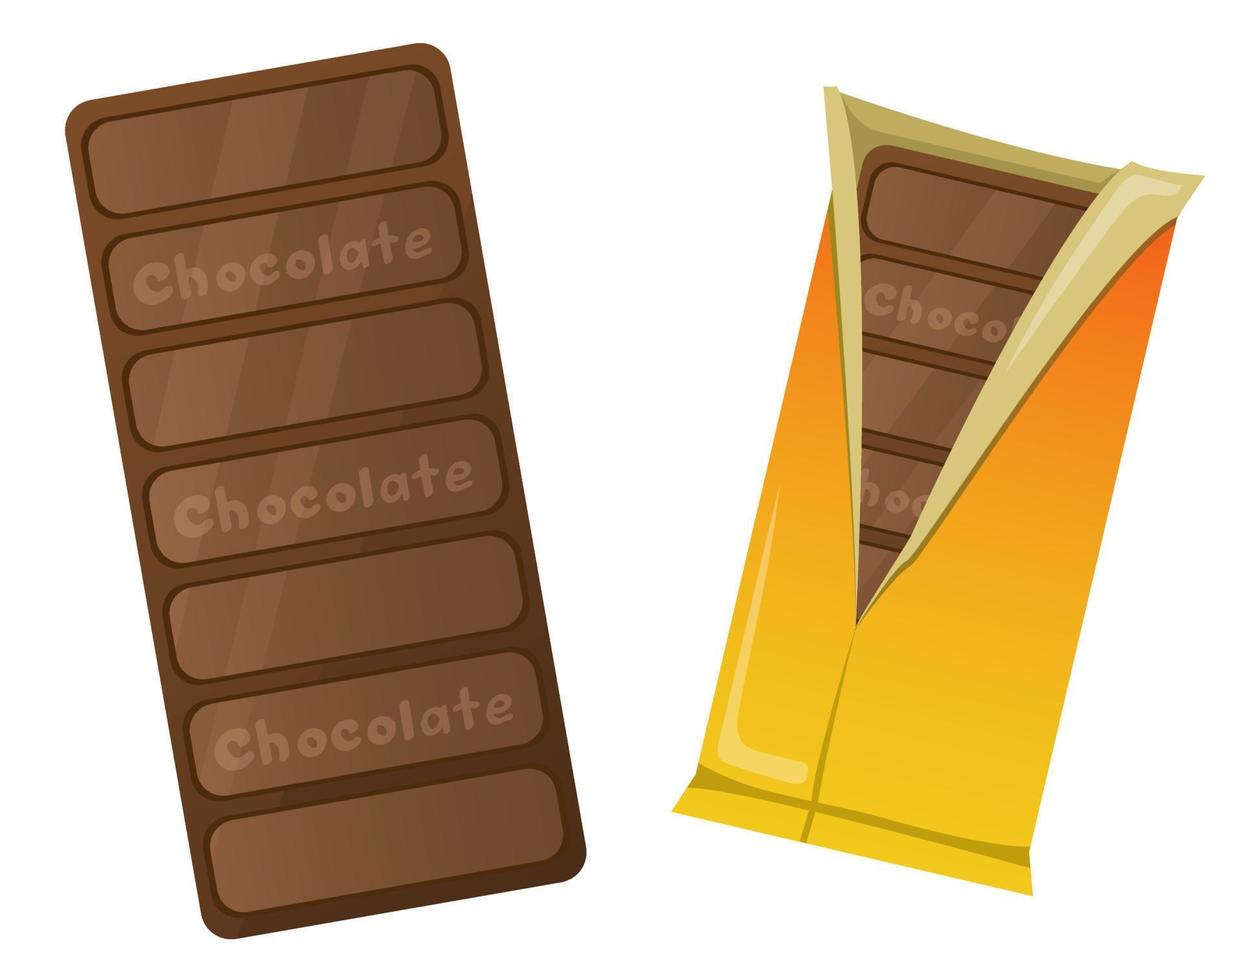 choklad i en gul omslag. en utsökt bar av choklad. choklad sötsaker. vektor illustrationer på en vit bakgrund.